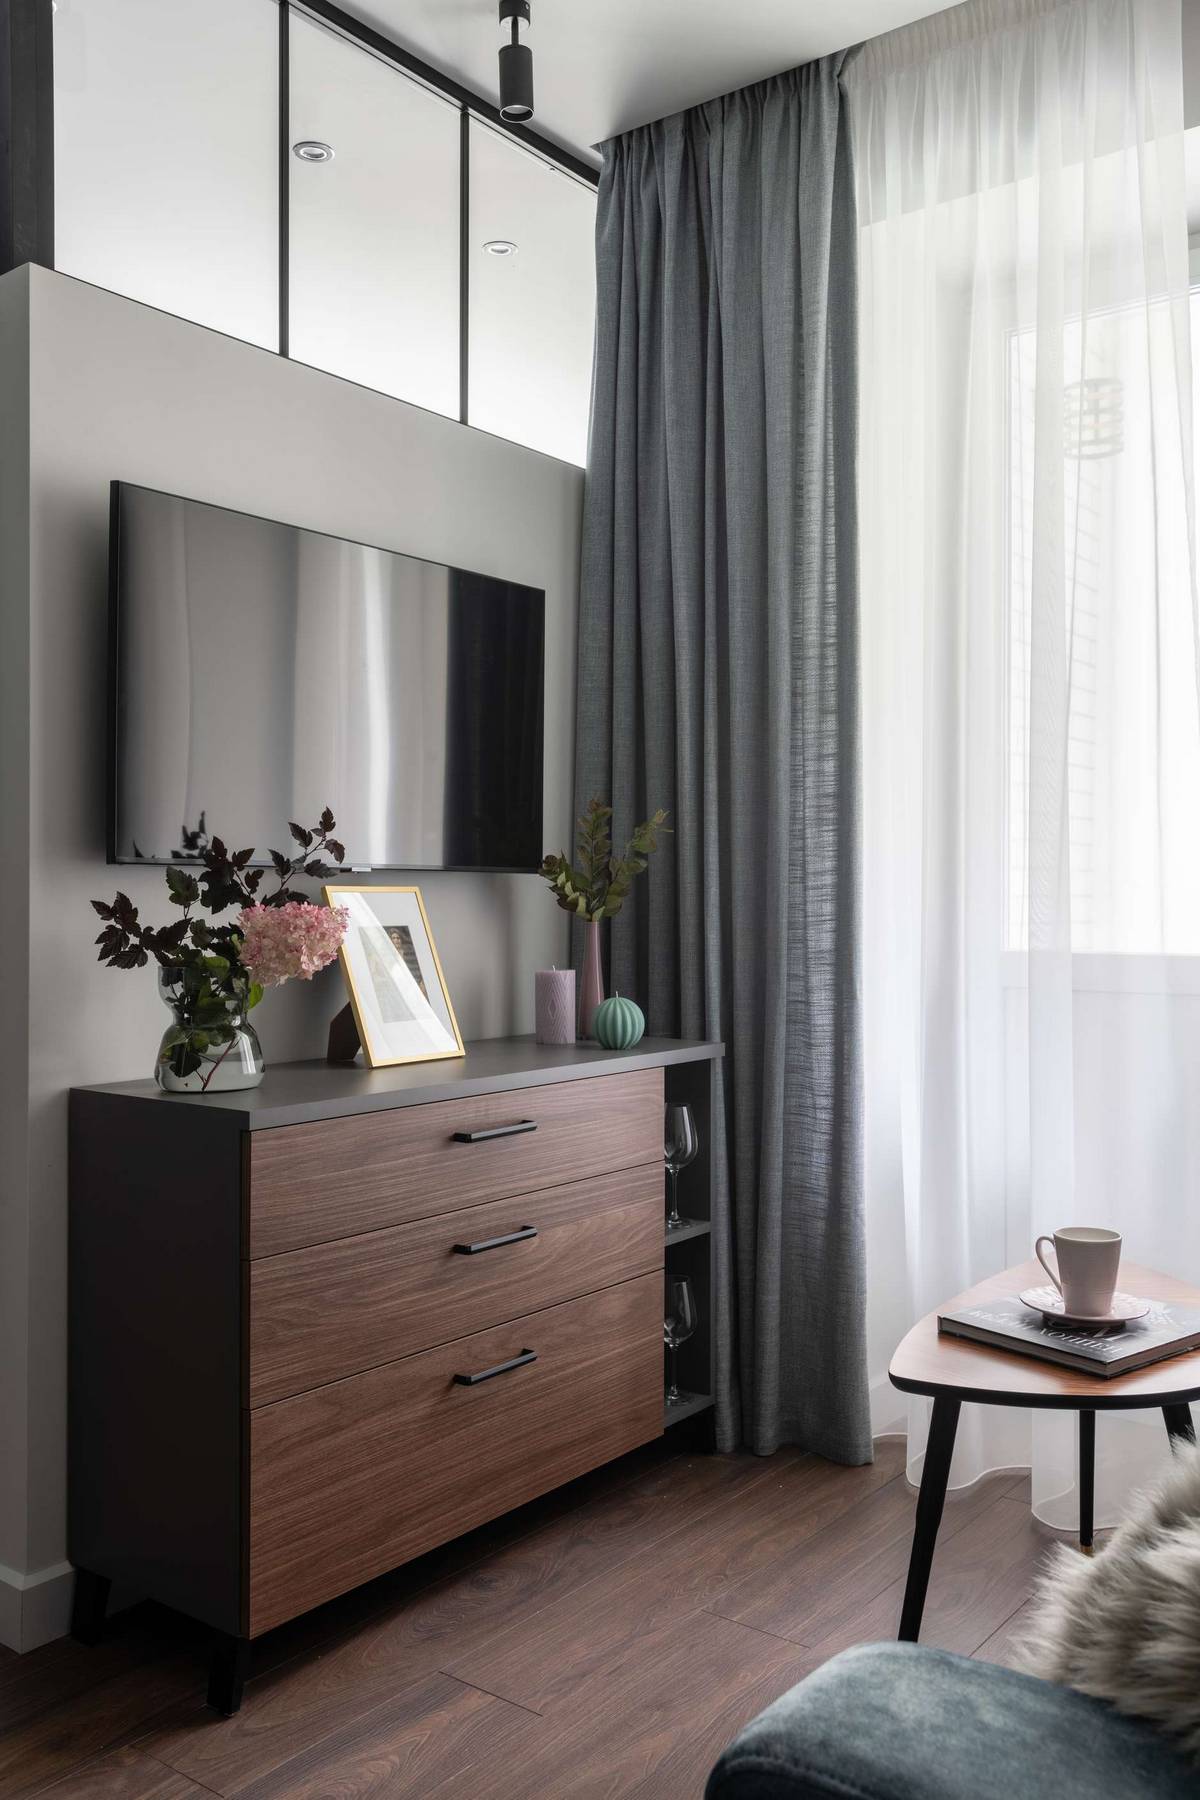 Đối diện sofa là chiếc tủ lưu trữ thiết kế theo phong cách truyền thống với 3 ngăn to rộng, tivi gắn tường, trên cao lắp đặt cửa kính thông suốt với phòng ngủ.